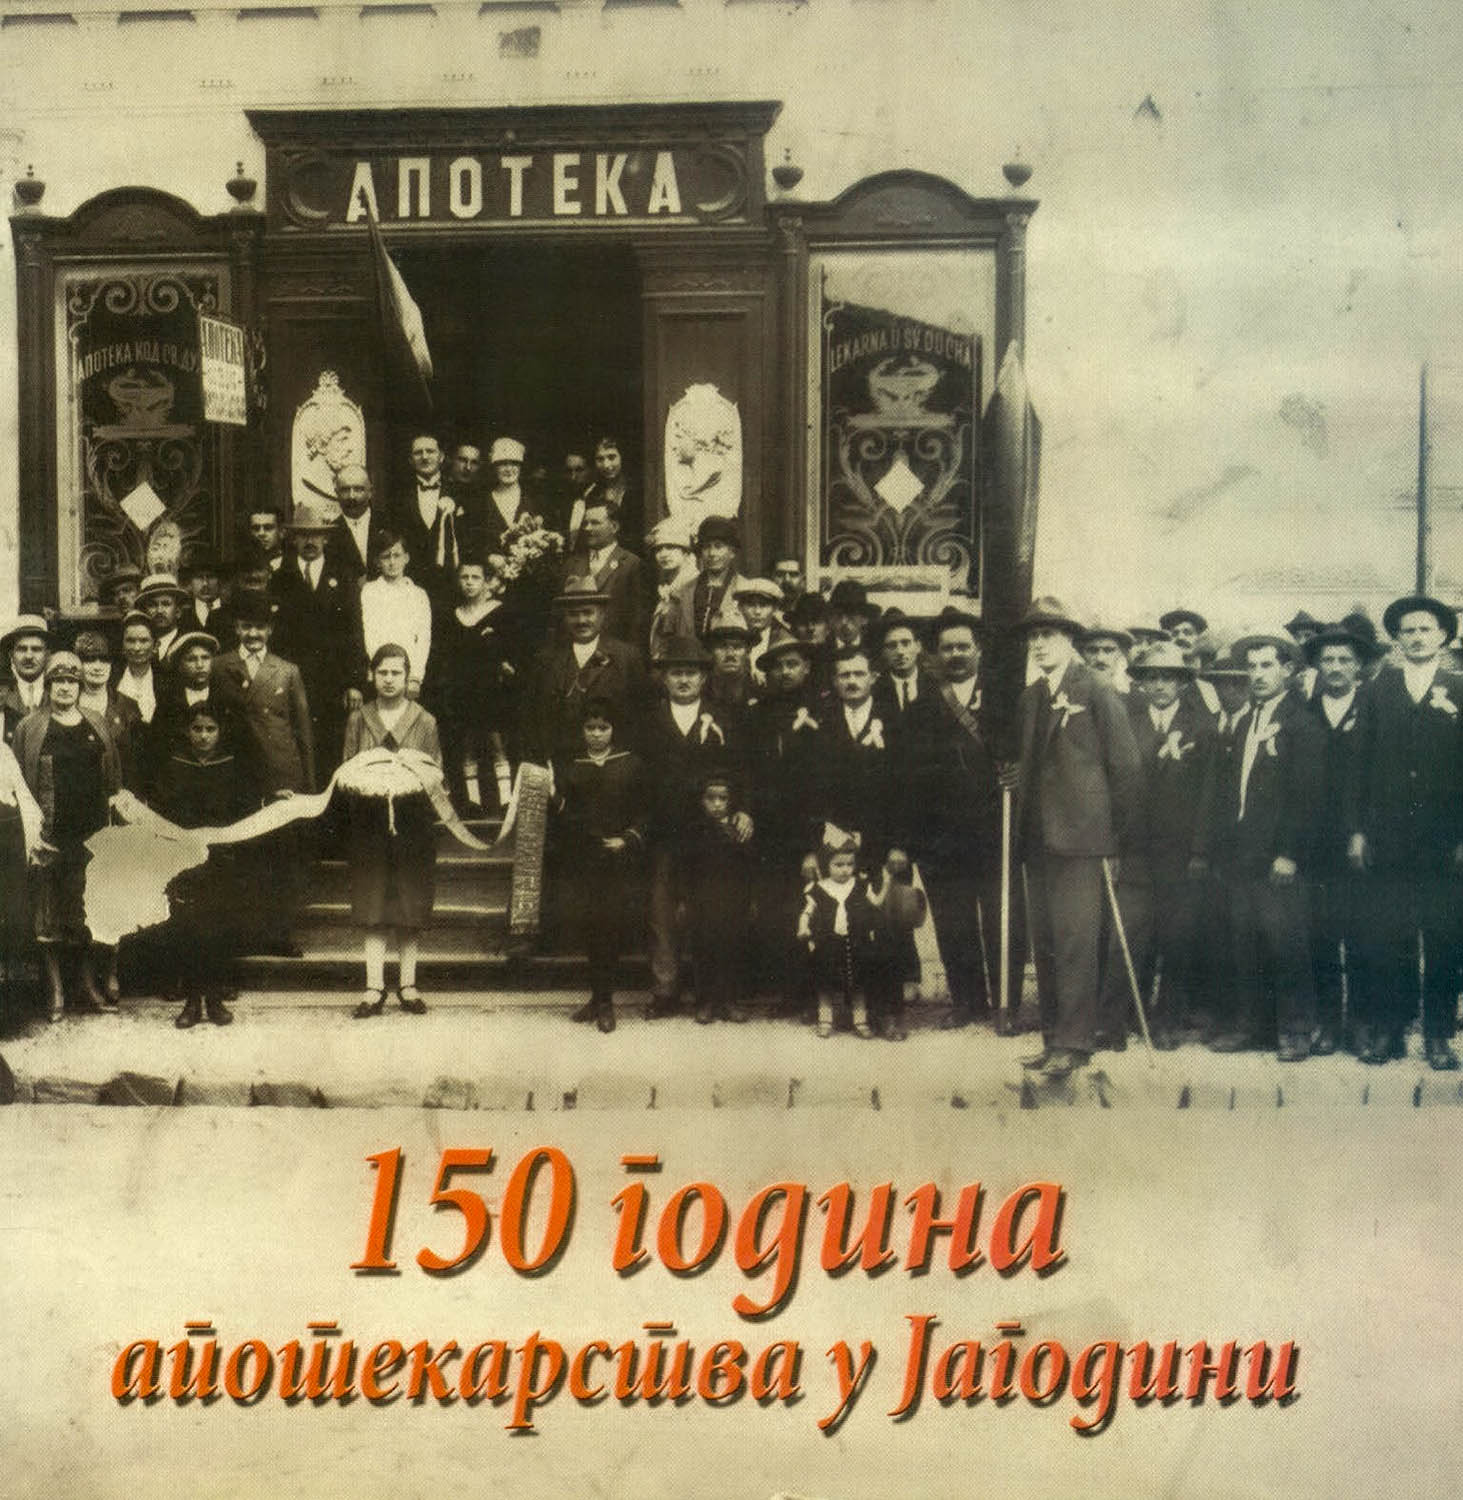 150 years of pharmacy in Jagodina